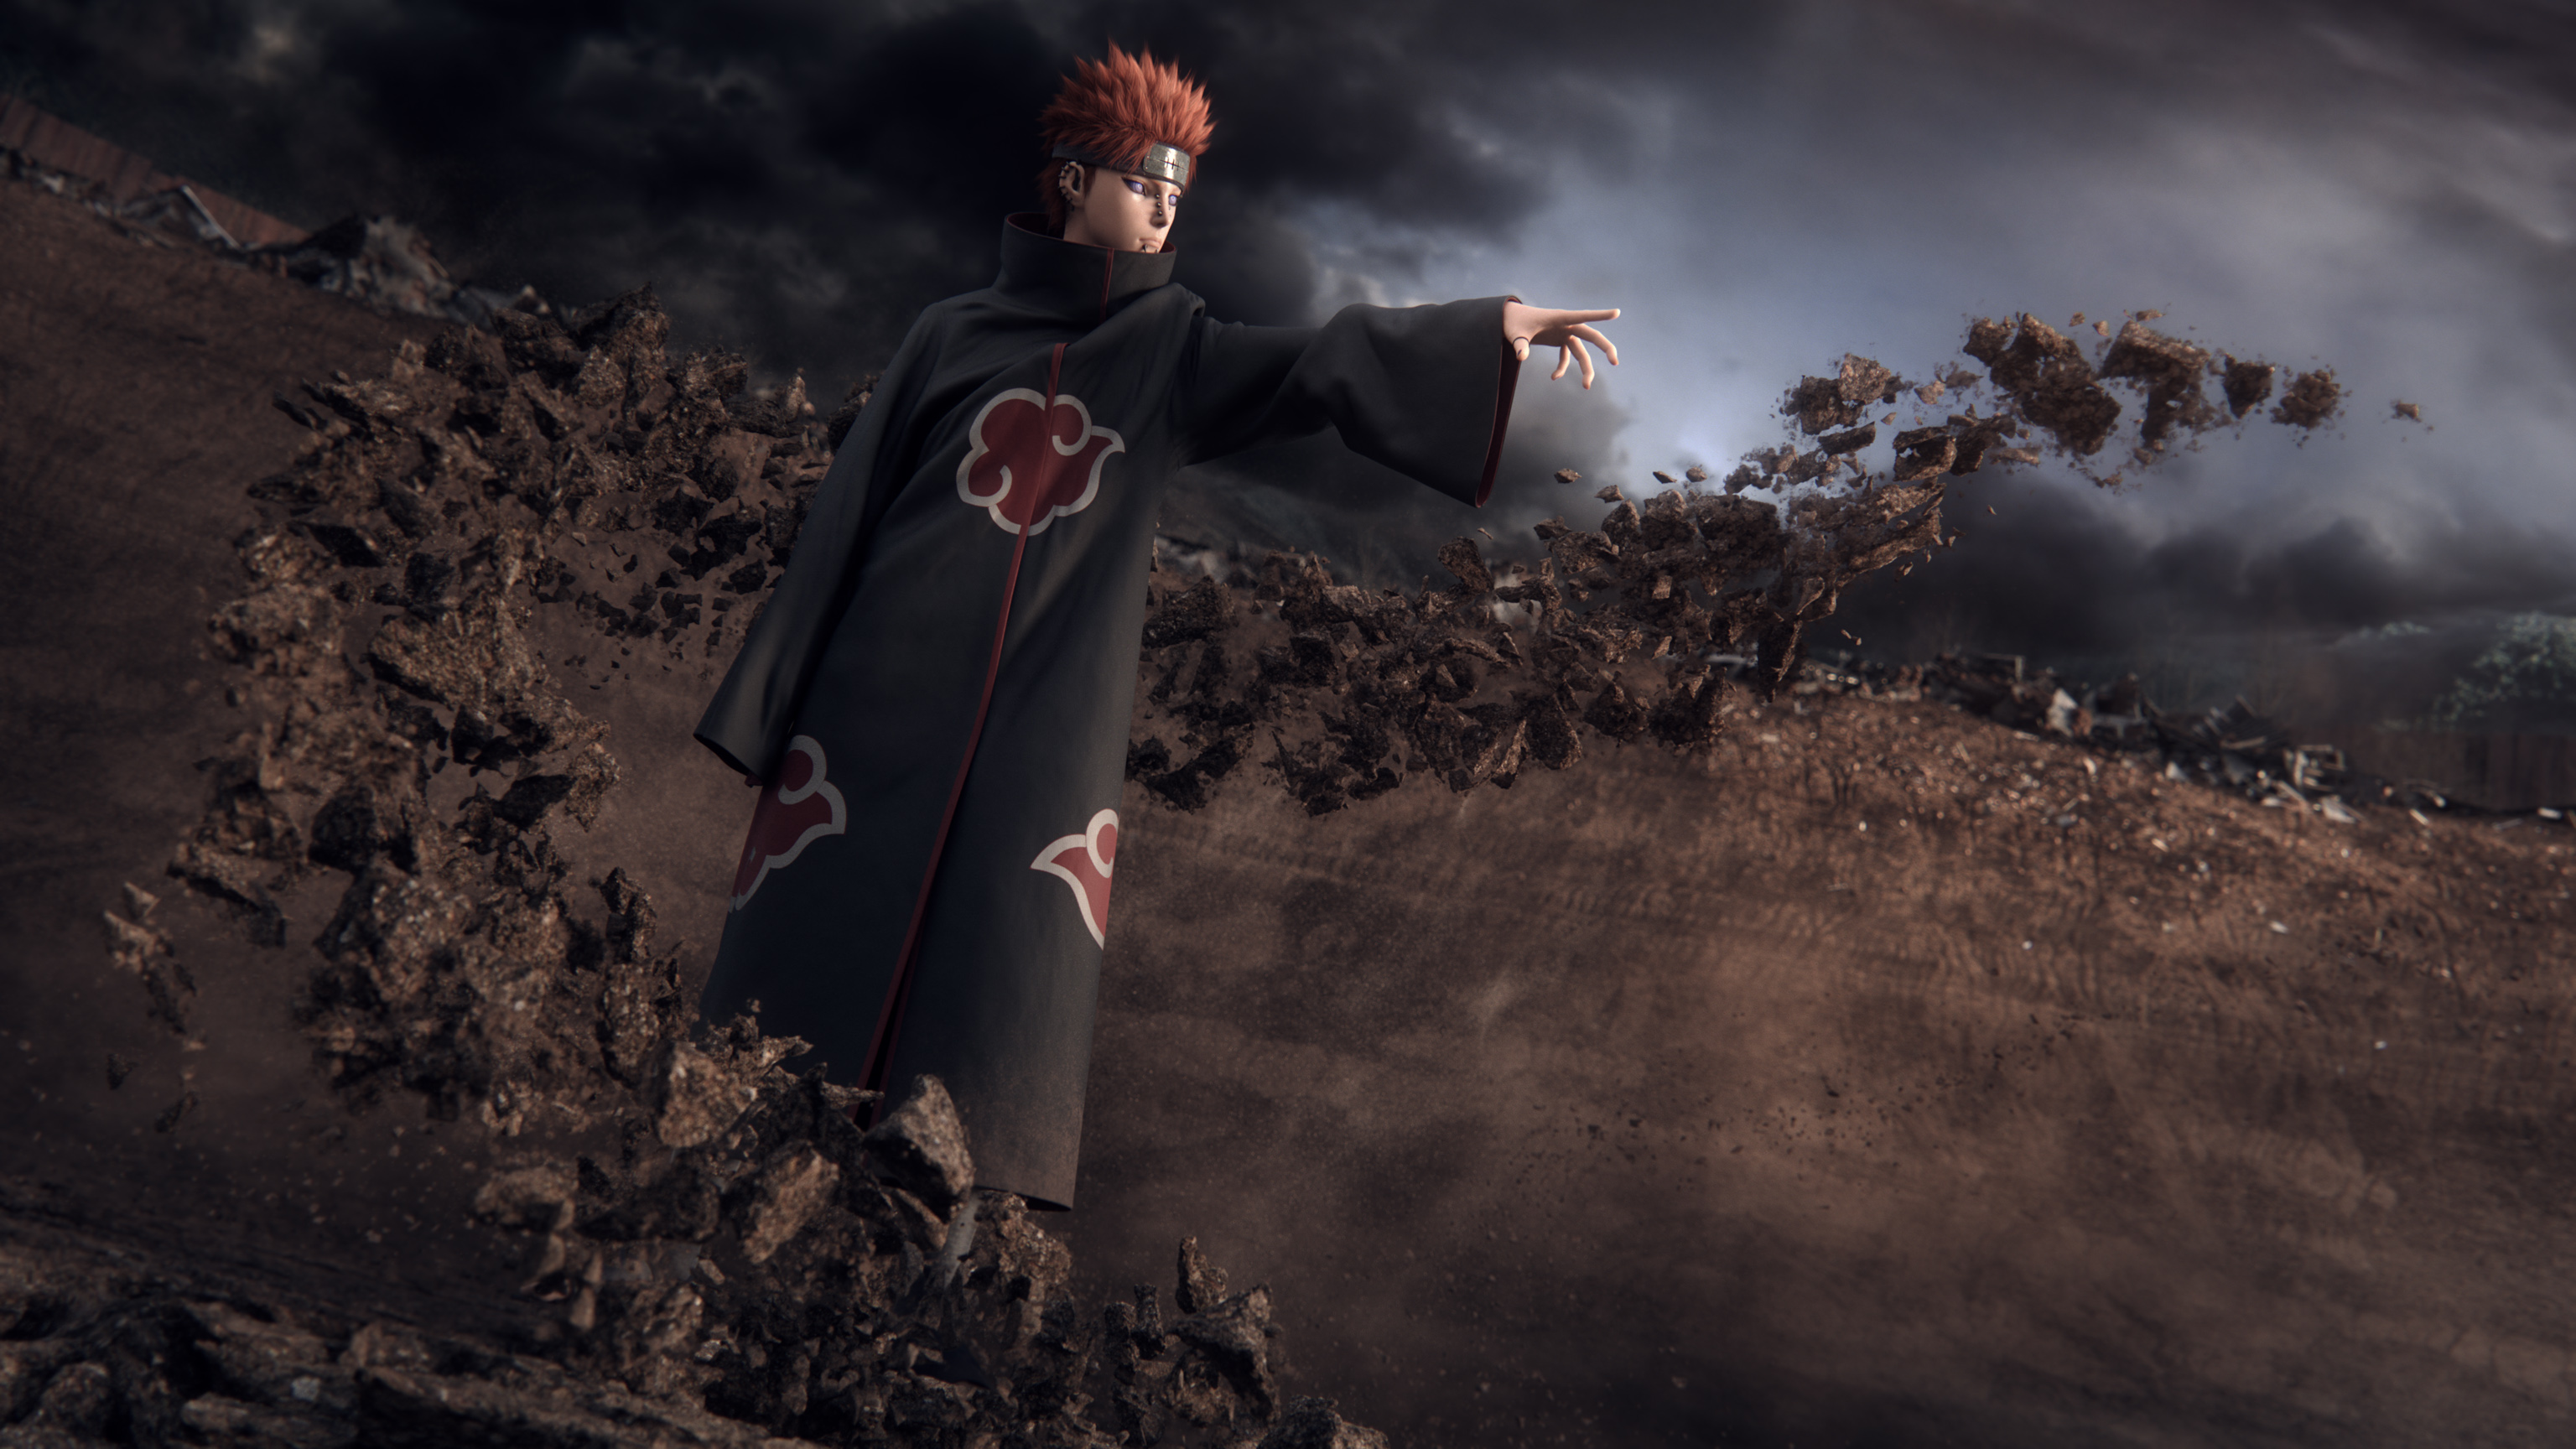 Pain Naruto - HD Wallpaper 